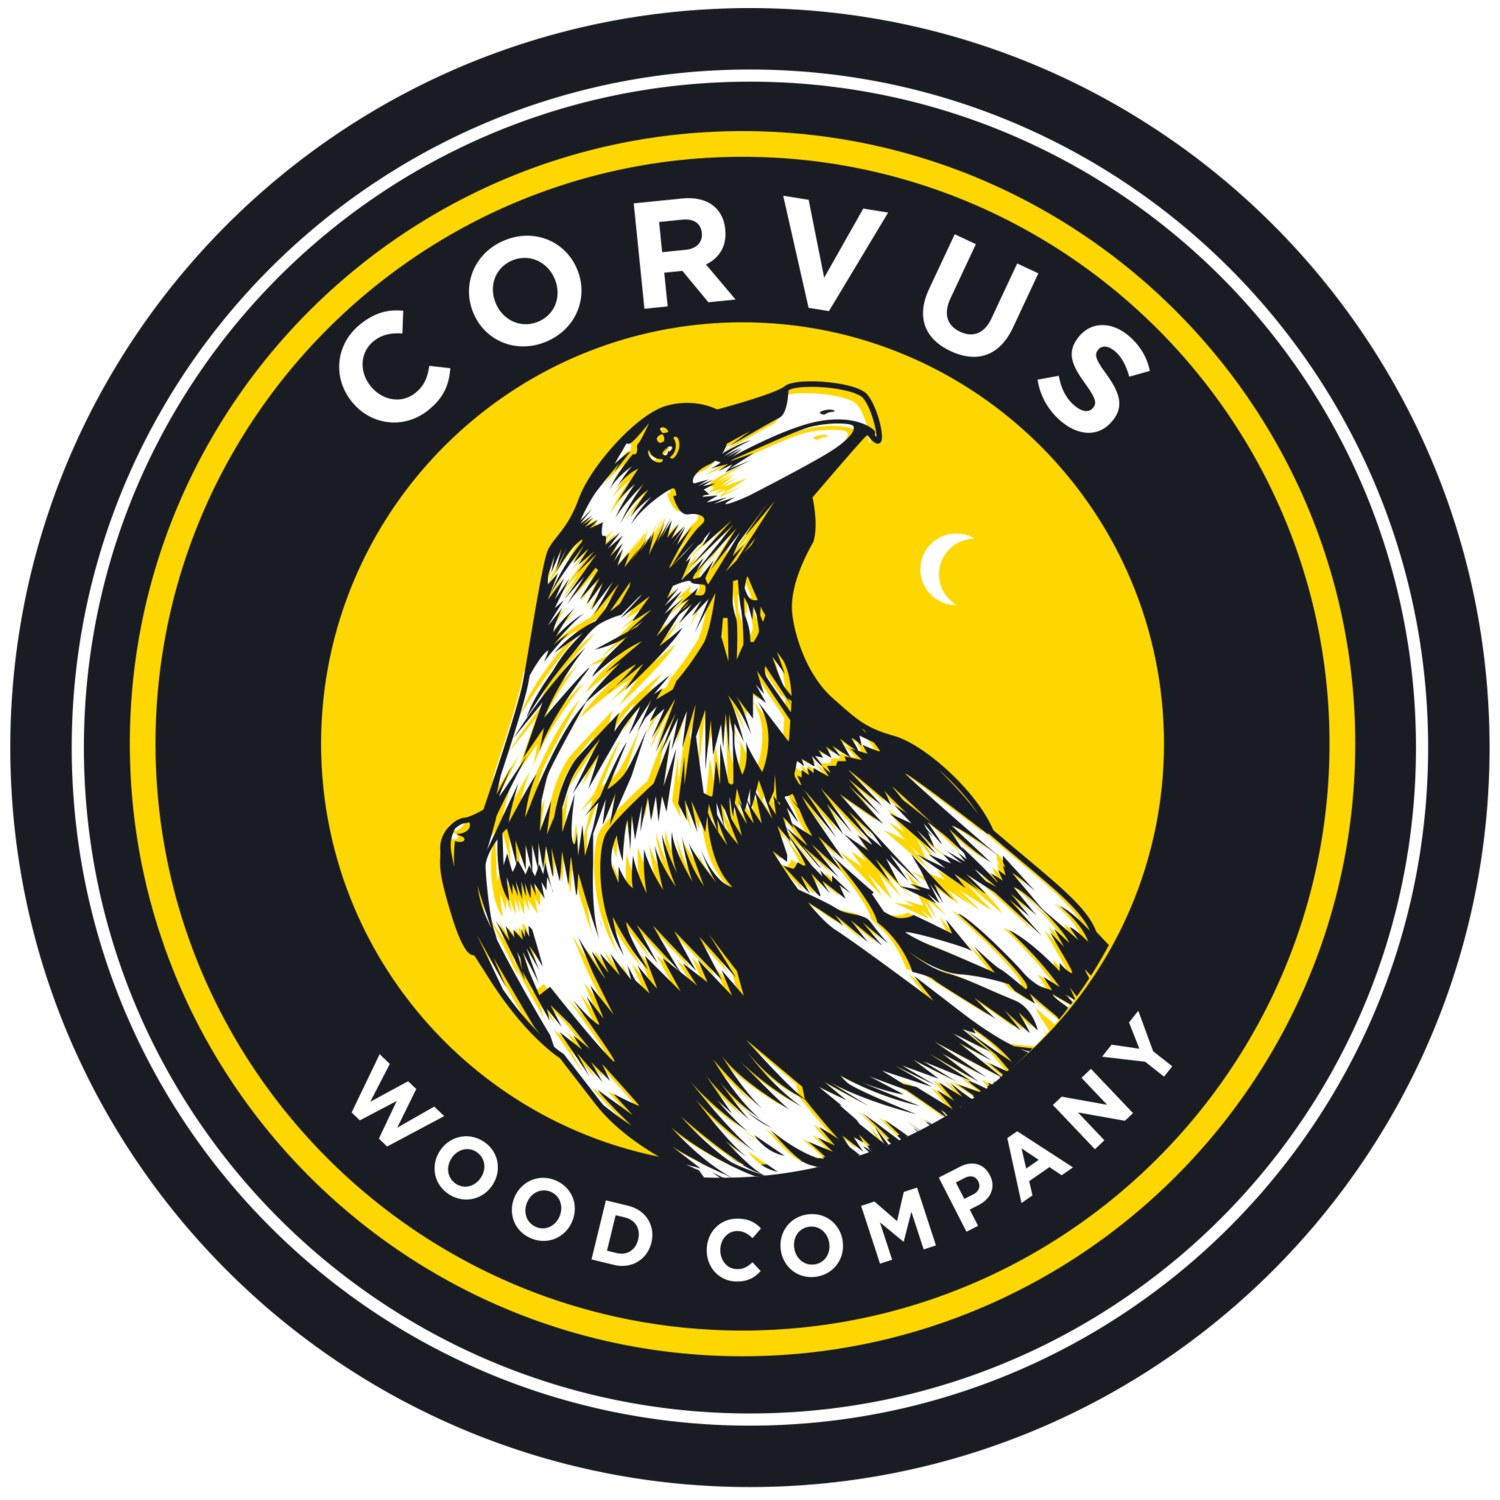 Corvus Wood Co.